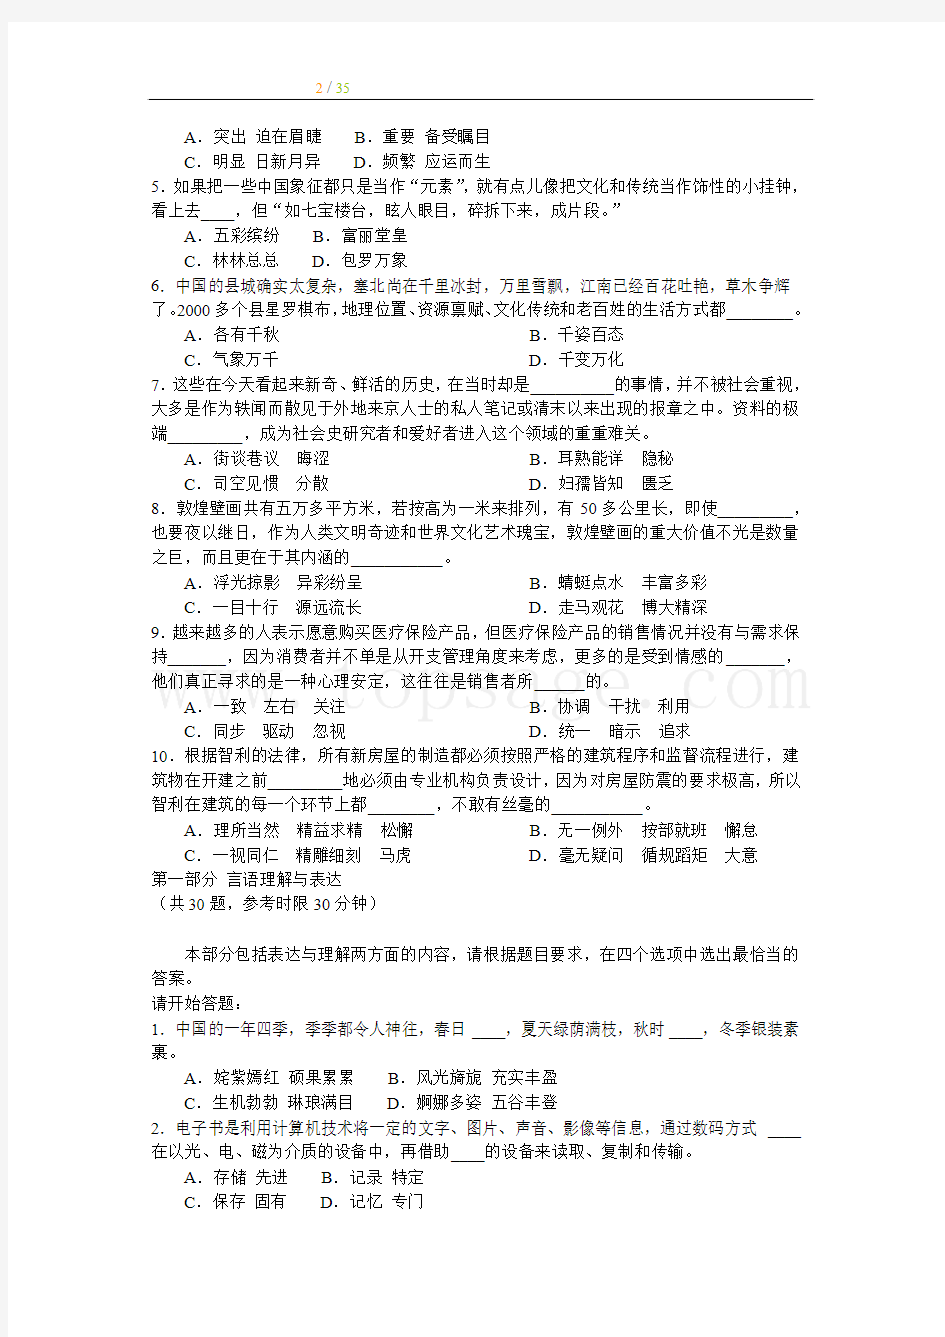 2010年辽宁省公务员(工作人员)录用考试申论真题及参考答案(下半年联考版)